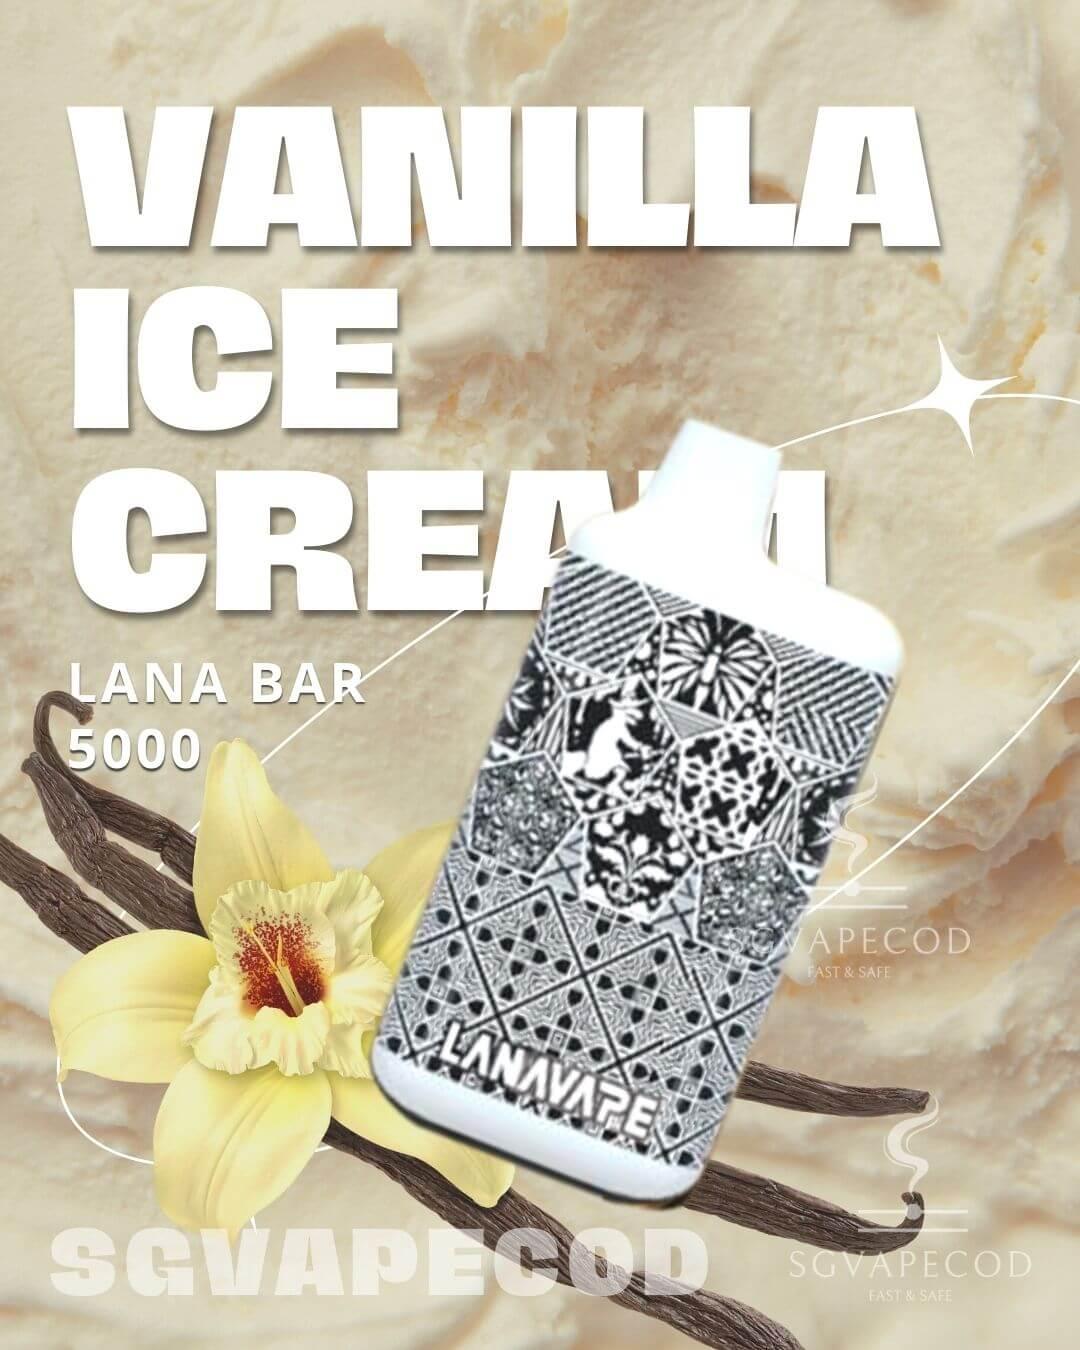 Lana bar 5000-Vanilla Ice Cream